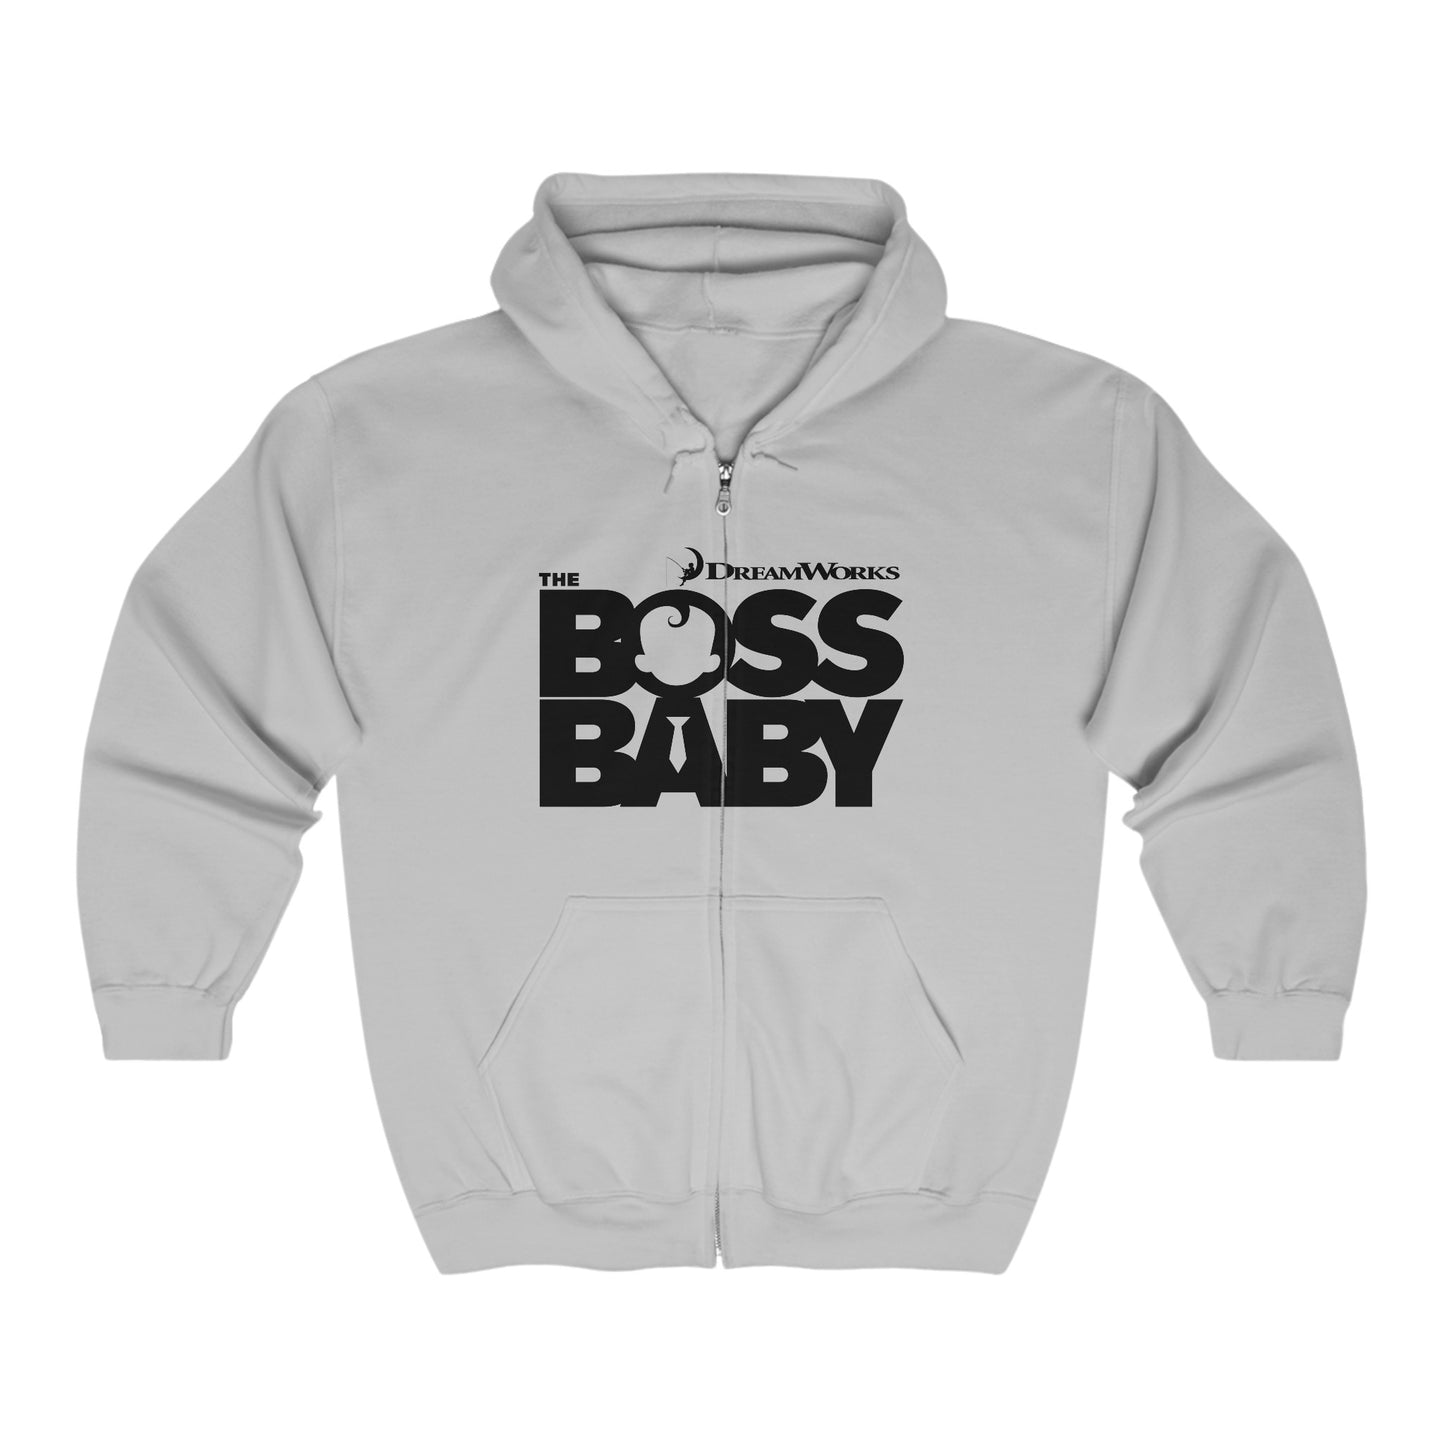 The Boss Baby Zip-Up Hoodie